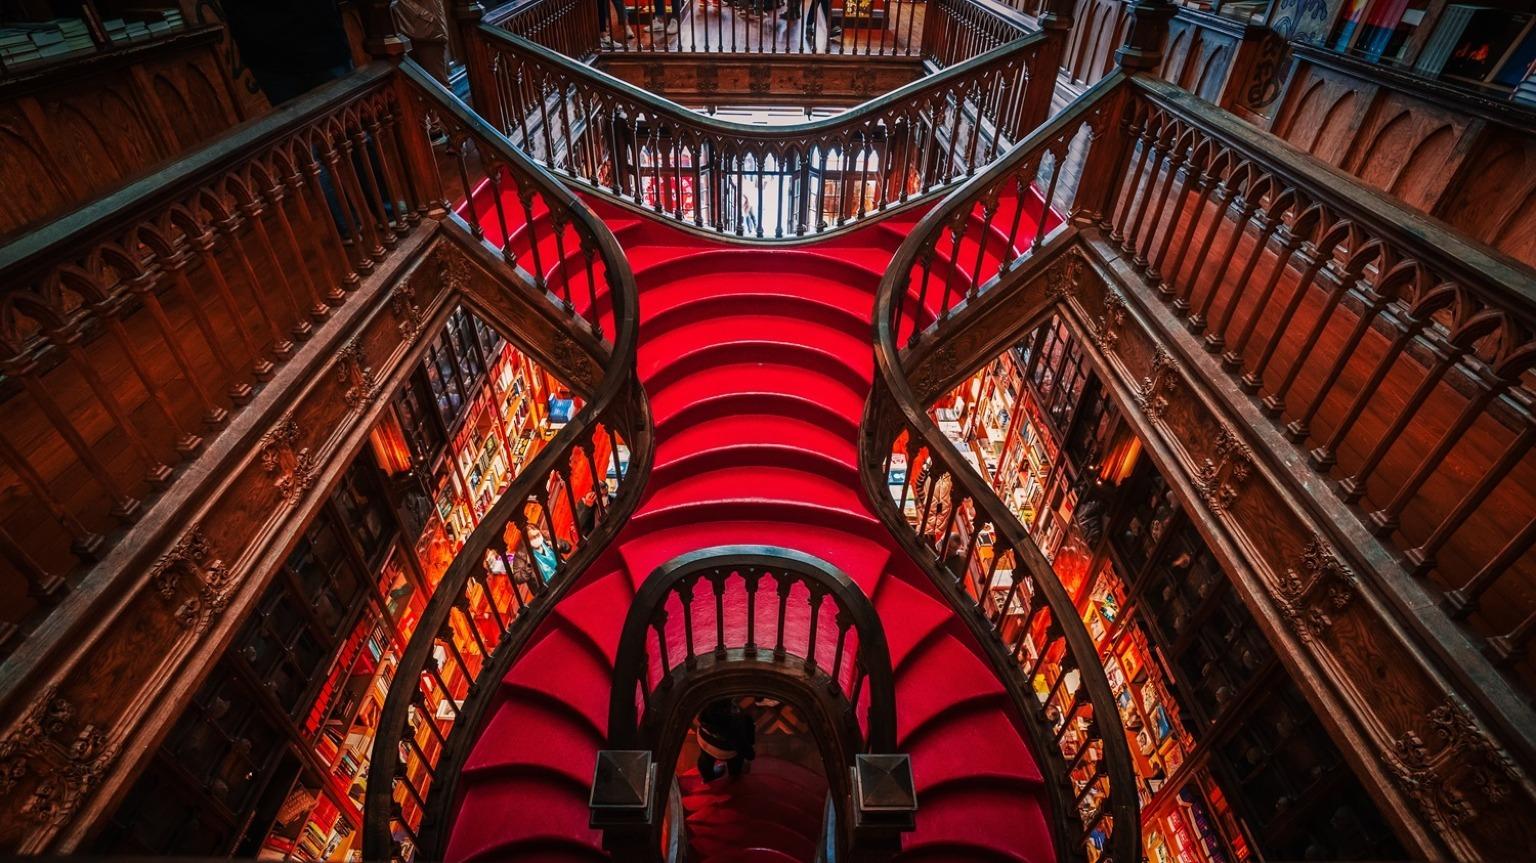 Suba a caprichosa escadaria vermelha da Livraria Lello, a icónica livraria do Porto, onde cada degrau ecoa uma história de encantamento literário e esplendor arquitetónico